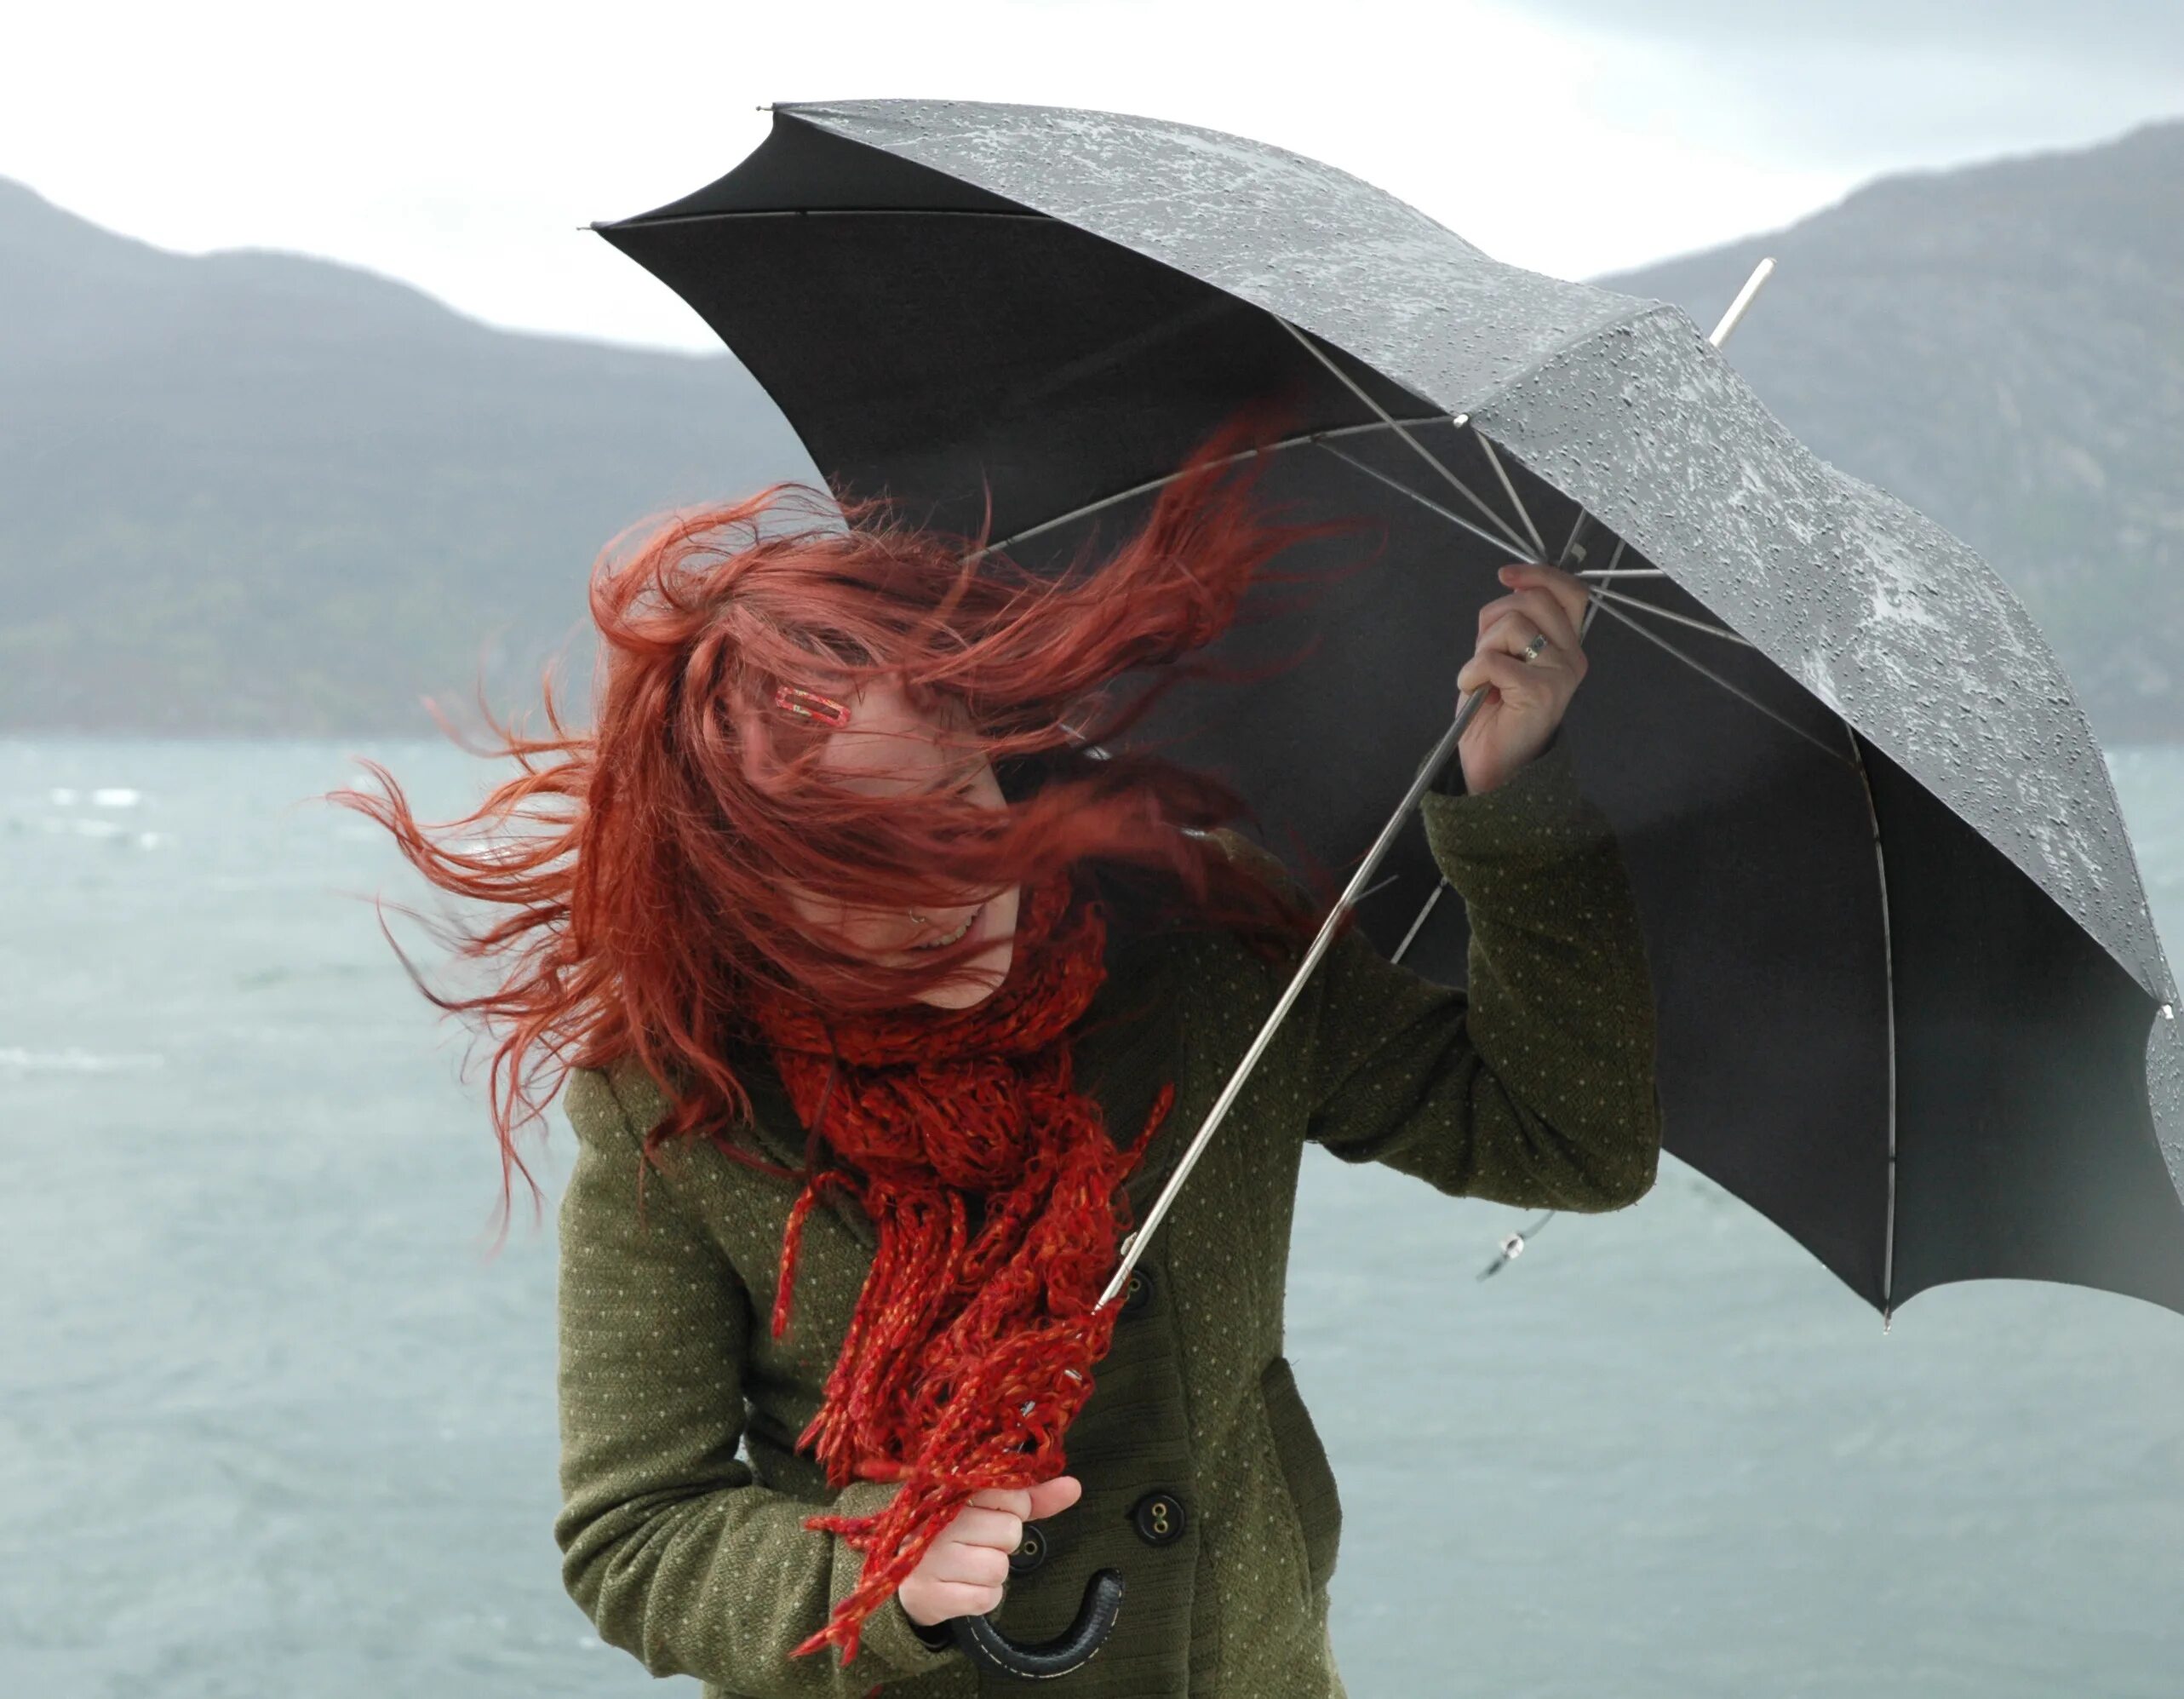 Ветер зонтик. Сильный ветер и зонт. Девушка с зонтом. Рыжая девушка с зонтом. A very strong wind